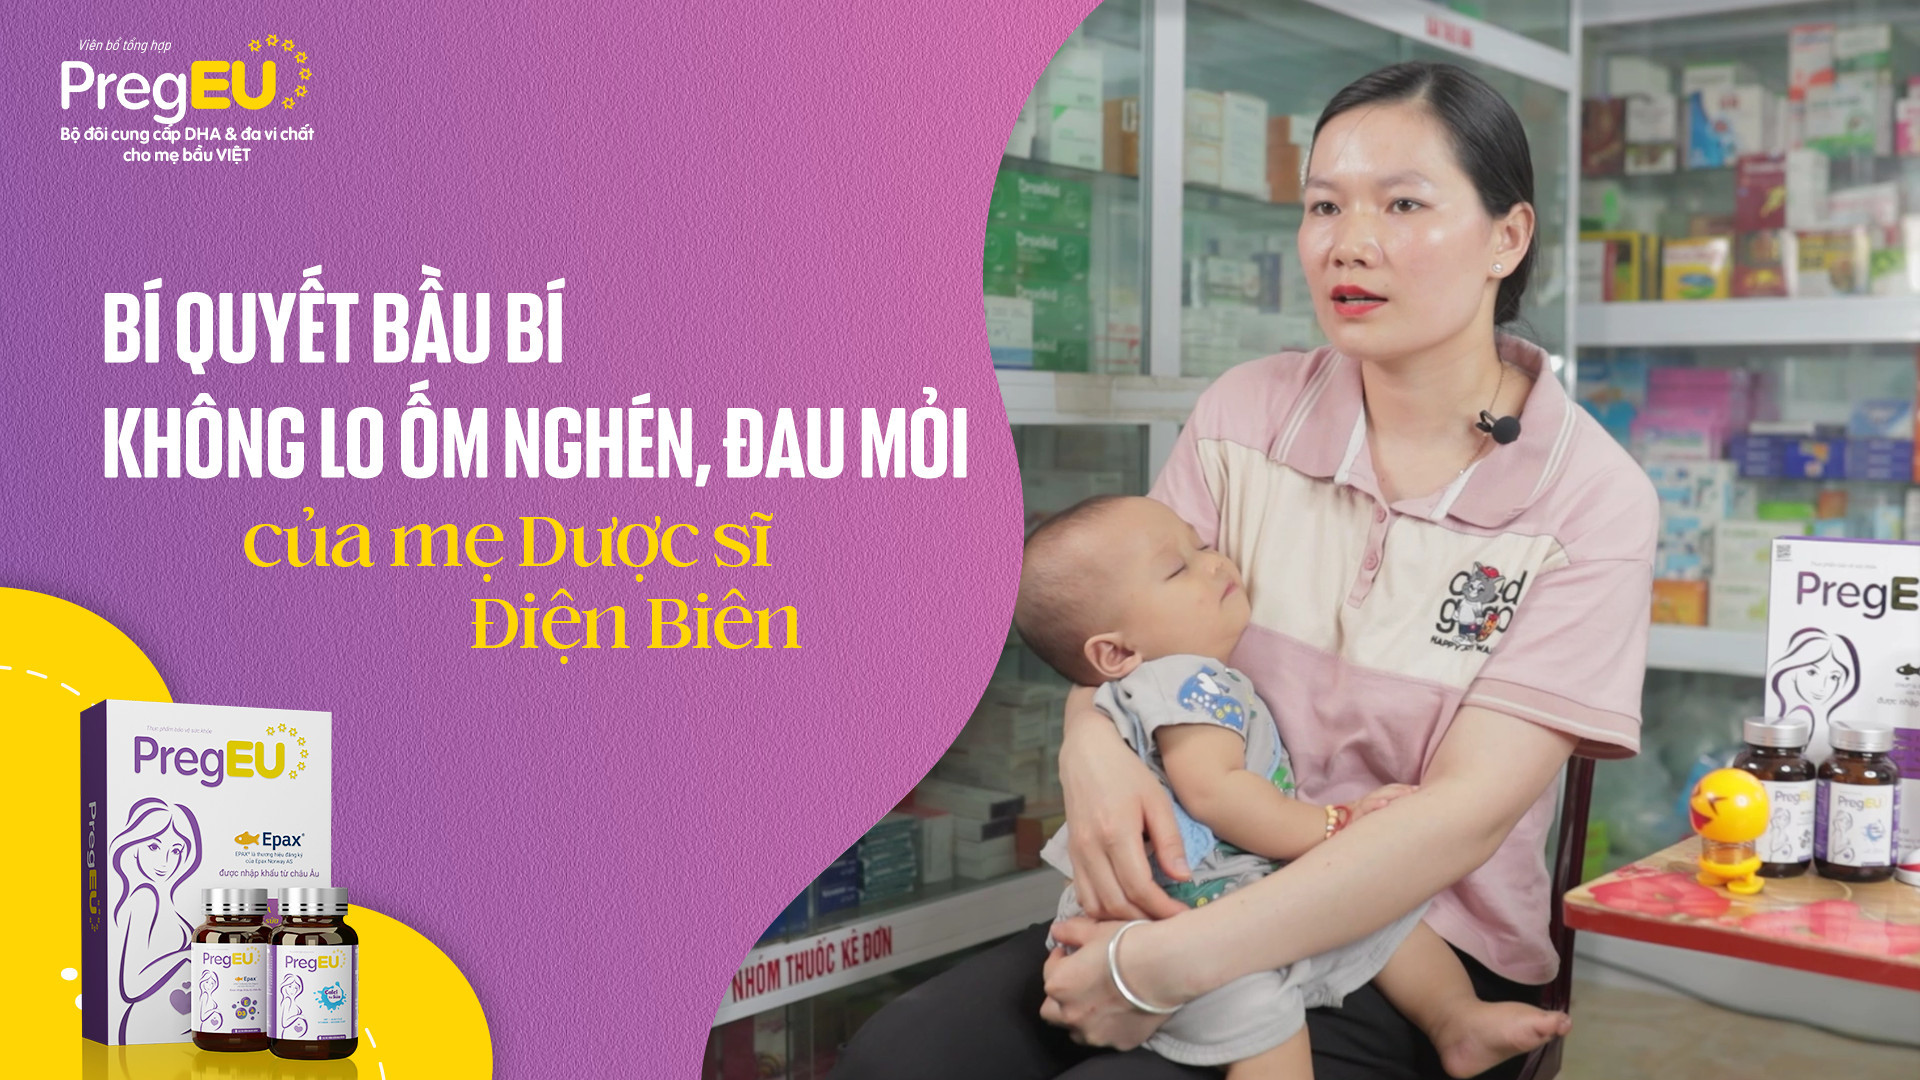 Bí quyết mẹ khỏe mạnh, con cứng cáp từ dược sĩ bỉm sữa ở Điện Biên